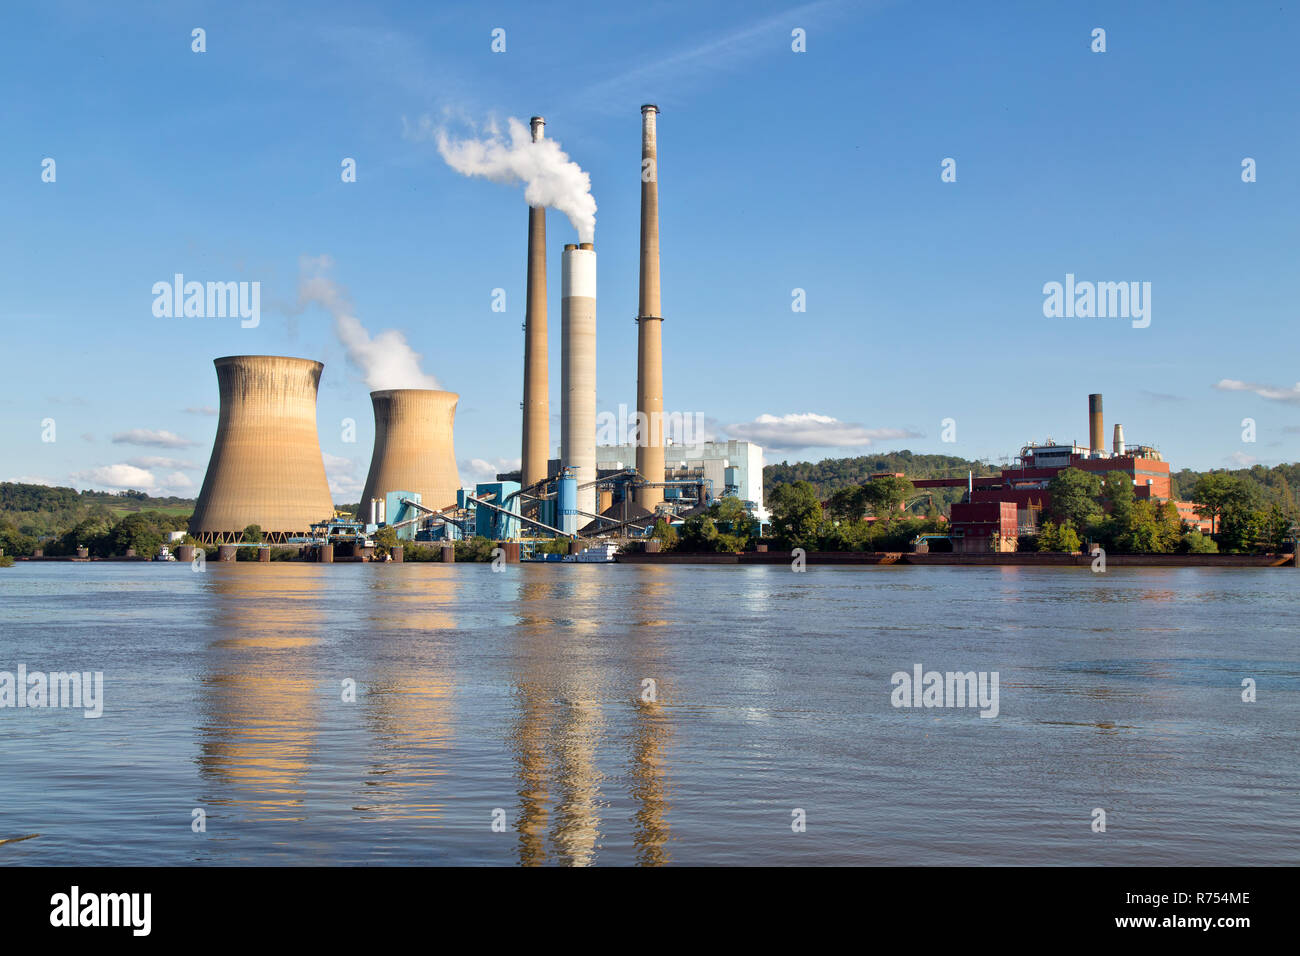 Pleasants Power Station en funcionamiento, 1,3 gigavatios de energía a partir del carbón vegetal, ubicado sobre el Río Ohio, Willow Island, cerca de Belmont. Foto de stock